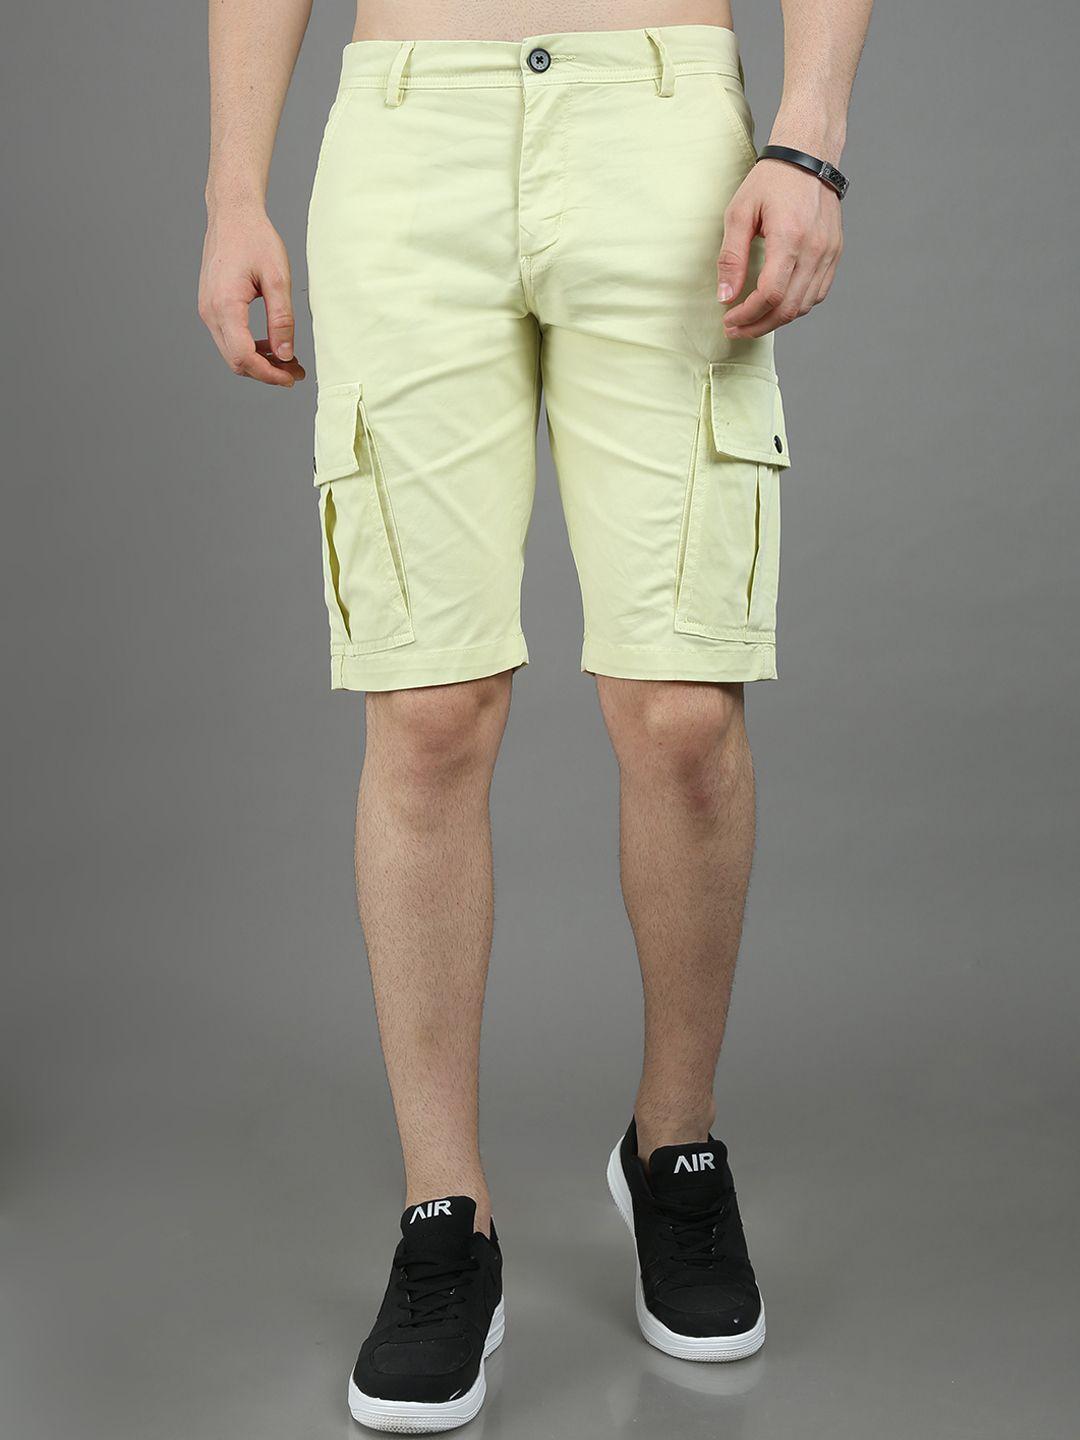 reslag-men-mid-rise-cotton-cargo-shorts